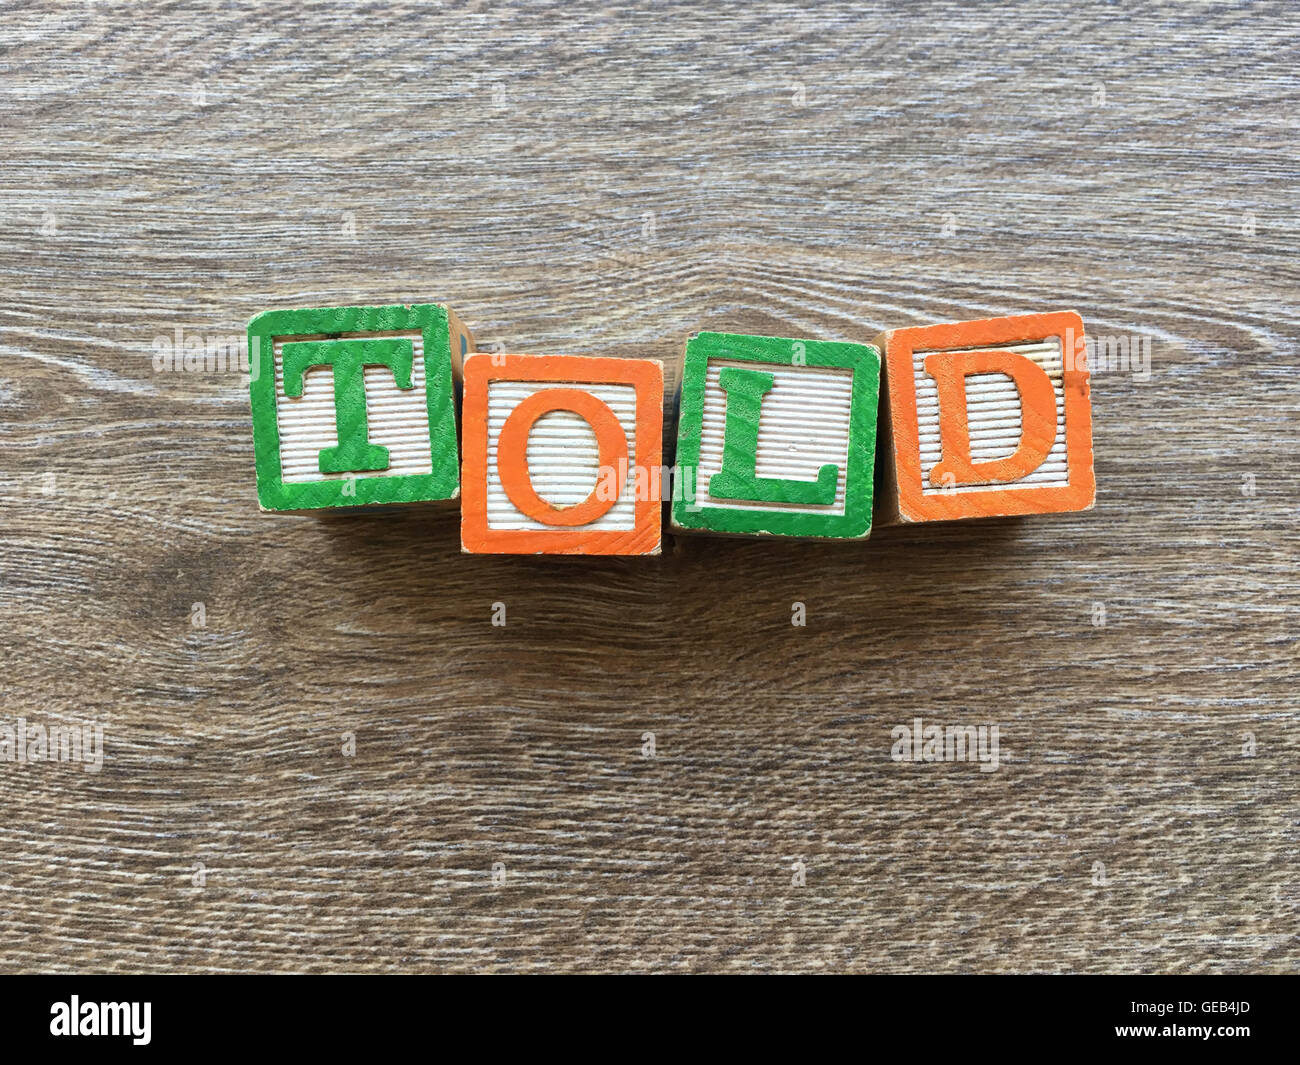 Holz-Block Buchstaben bilden das Verb gesagt, kombinieren diese Spielzeug-Briefe helfen Kinder zu lernen und schreiben Englisch Stockfoto